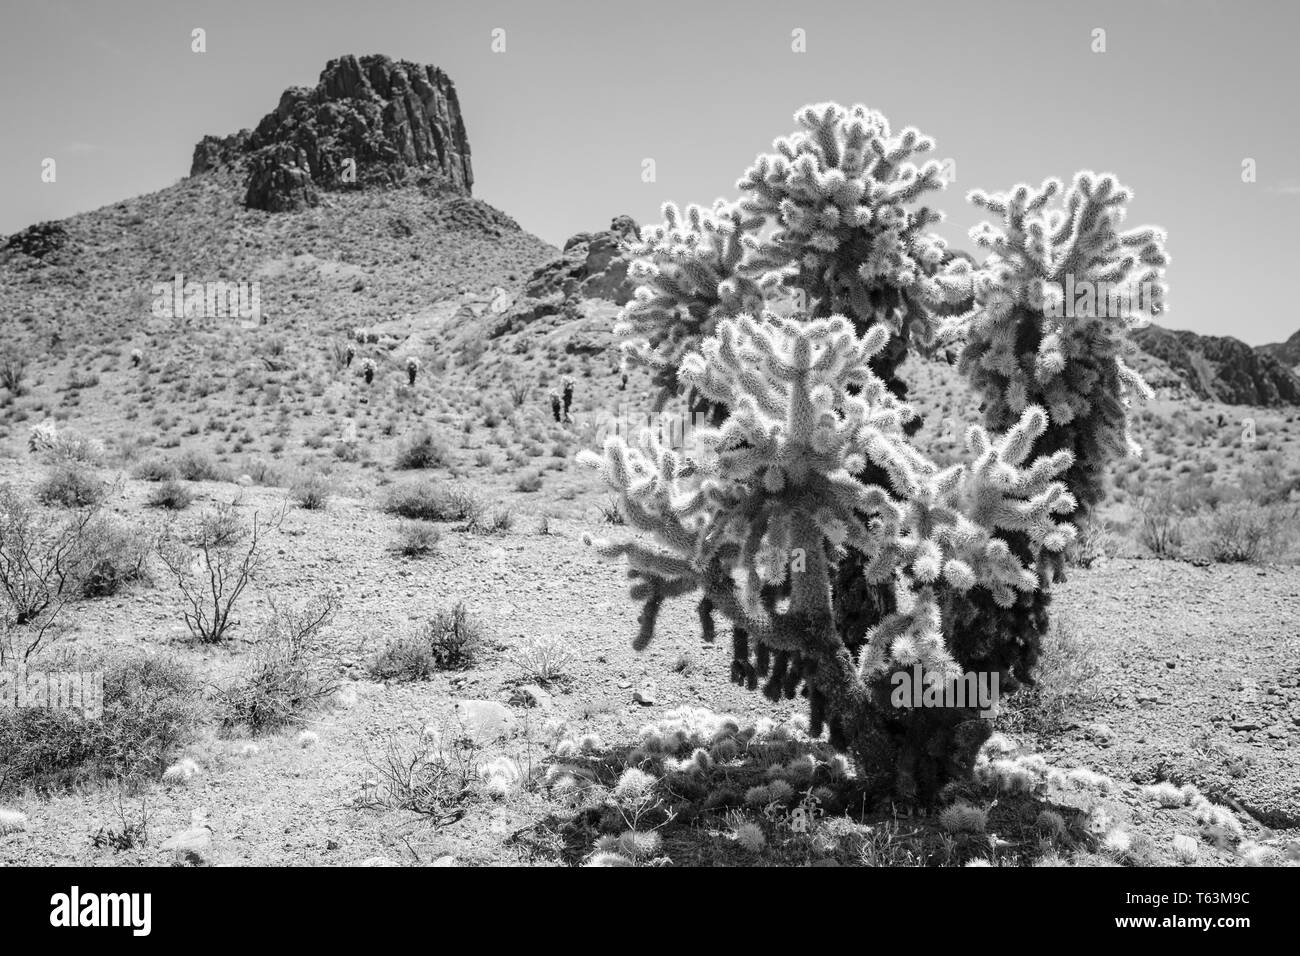 Schwarz-weiss Bild der Teddybär Cholla (Cylindropuntia Bigelovii) Kaktus auf einer Wüste in Arizona, USA Stockfoto